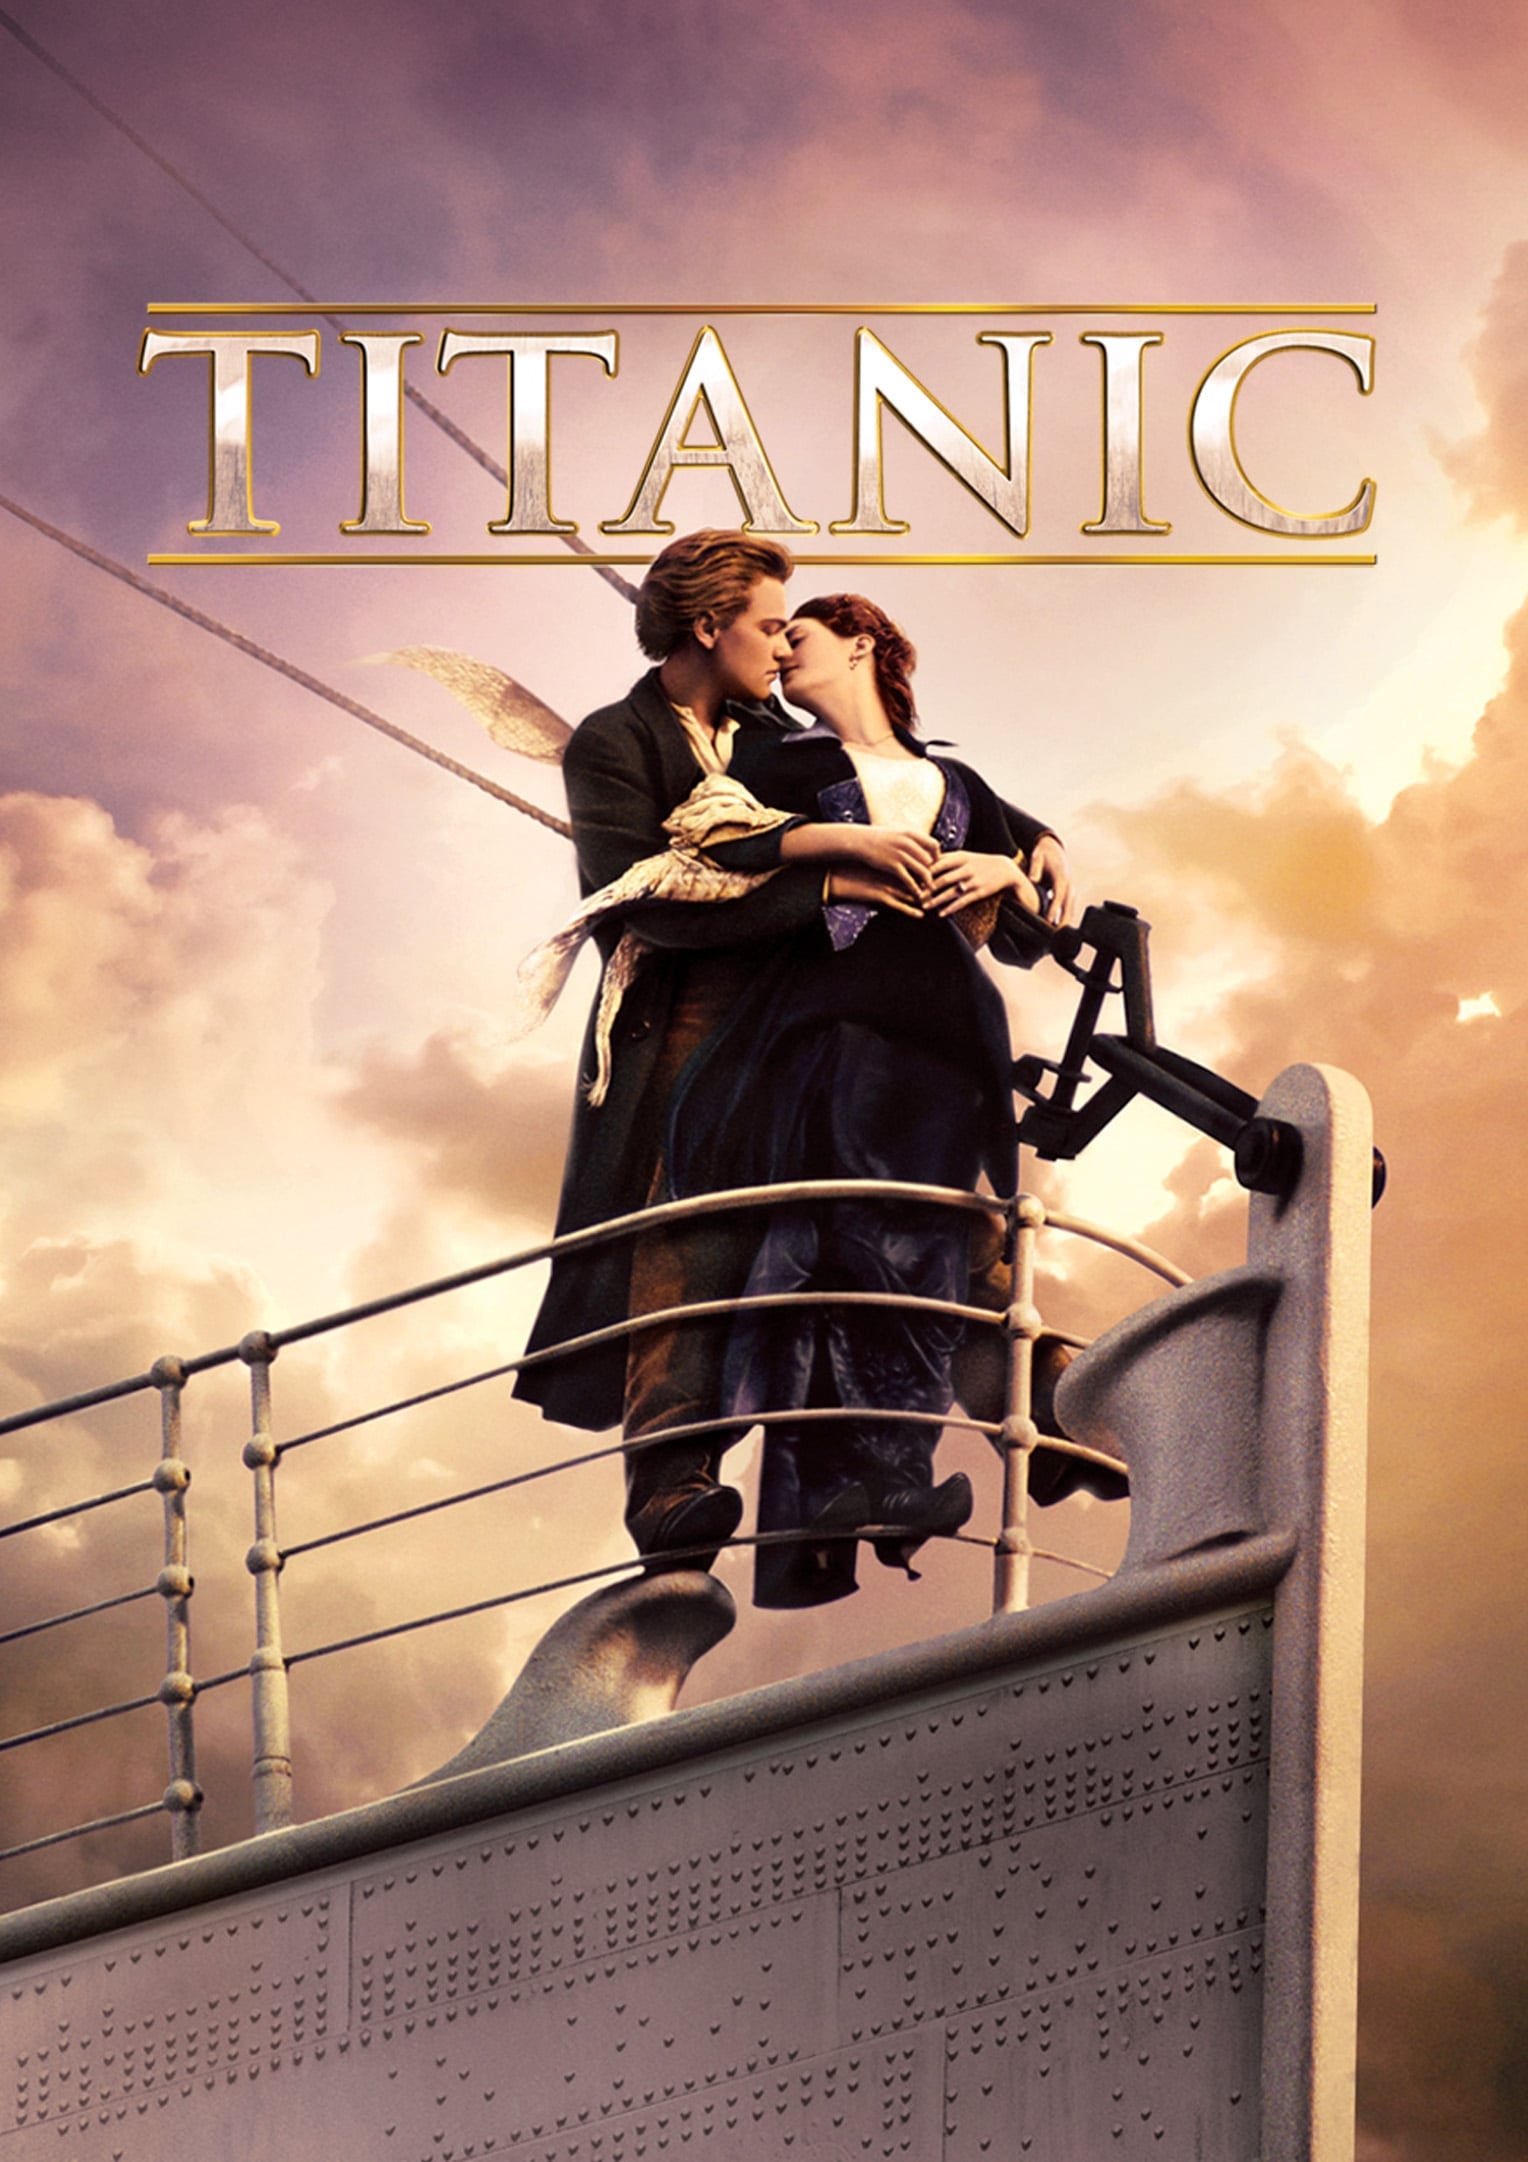 دانلود فیلم Titanic 1997 با دوبله فارسی